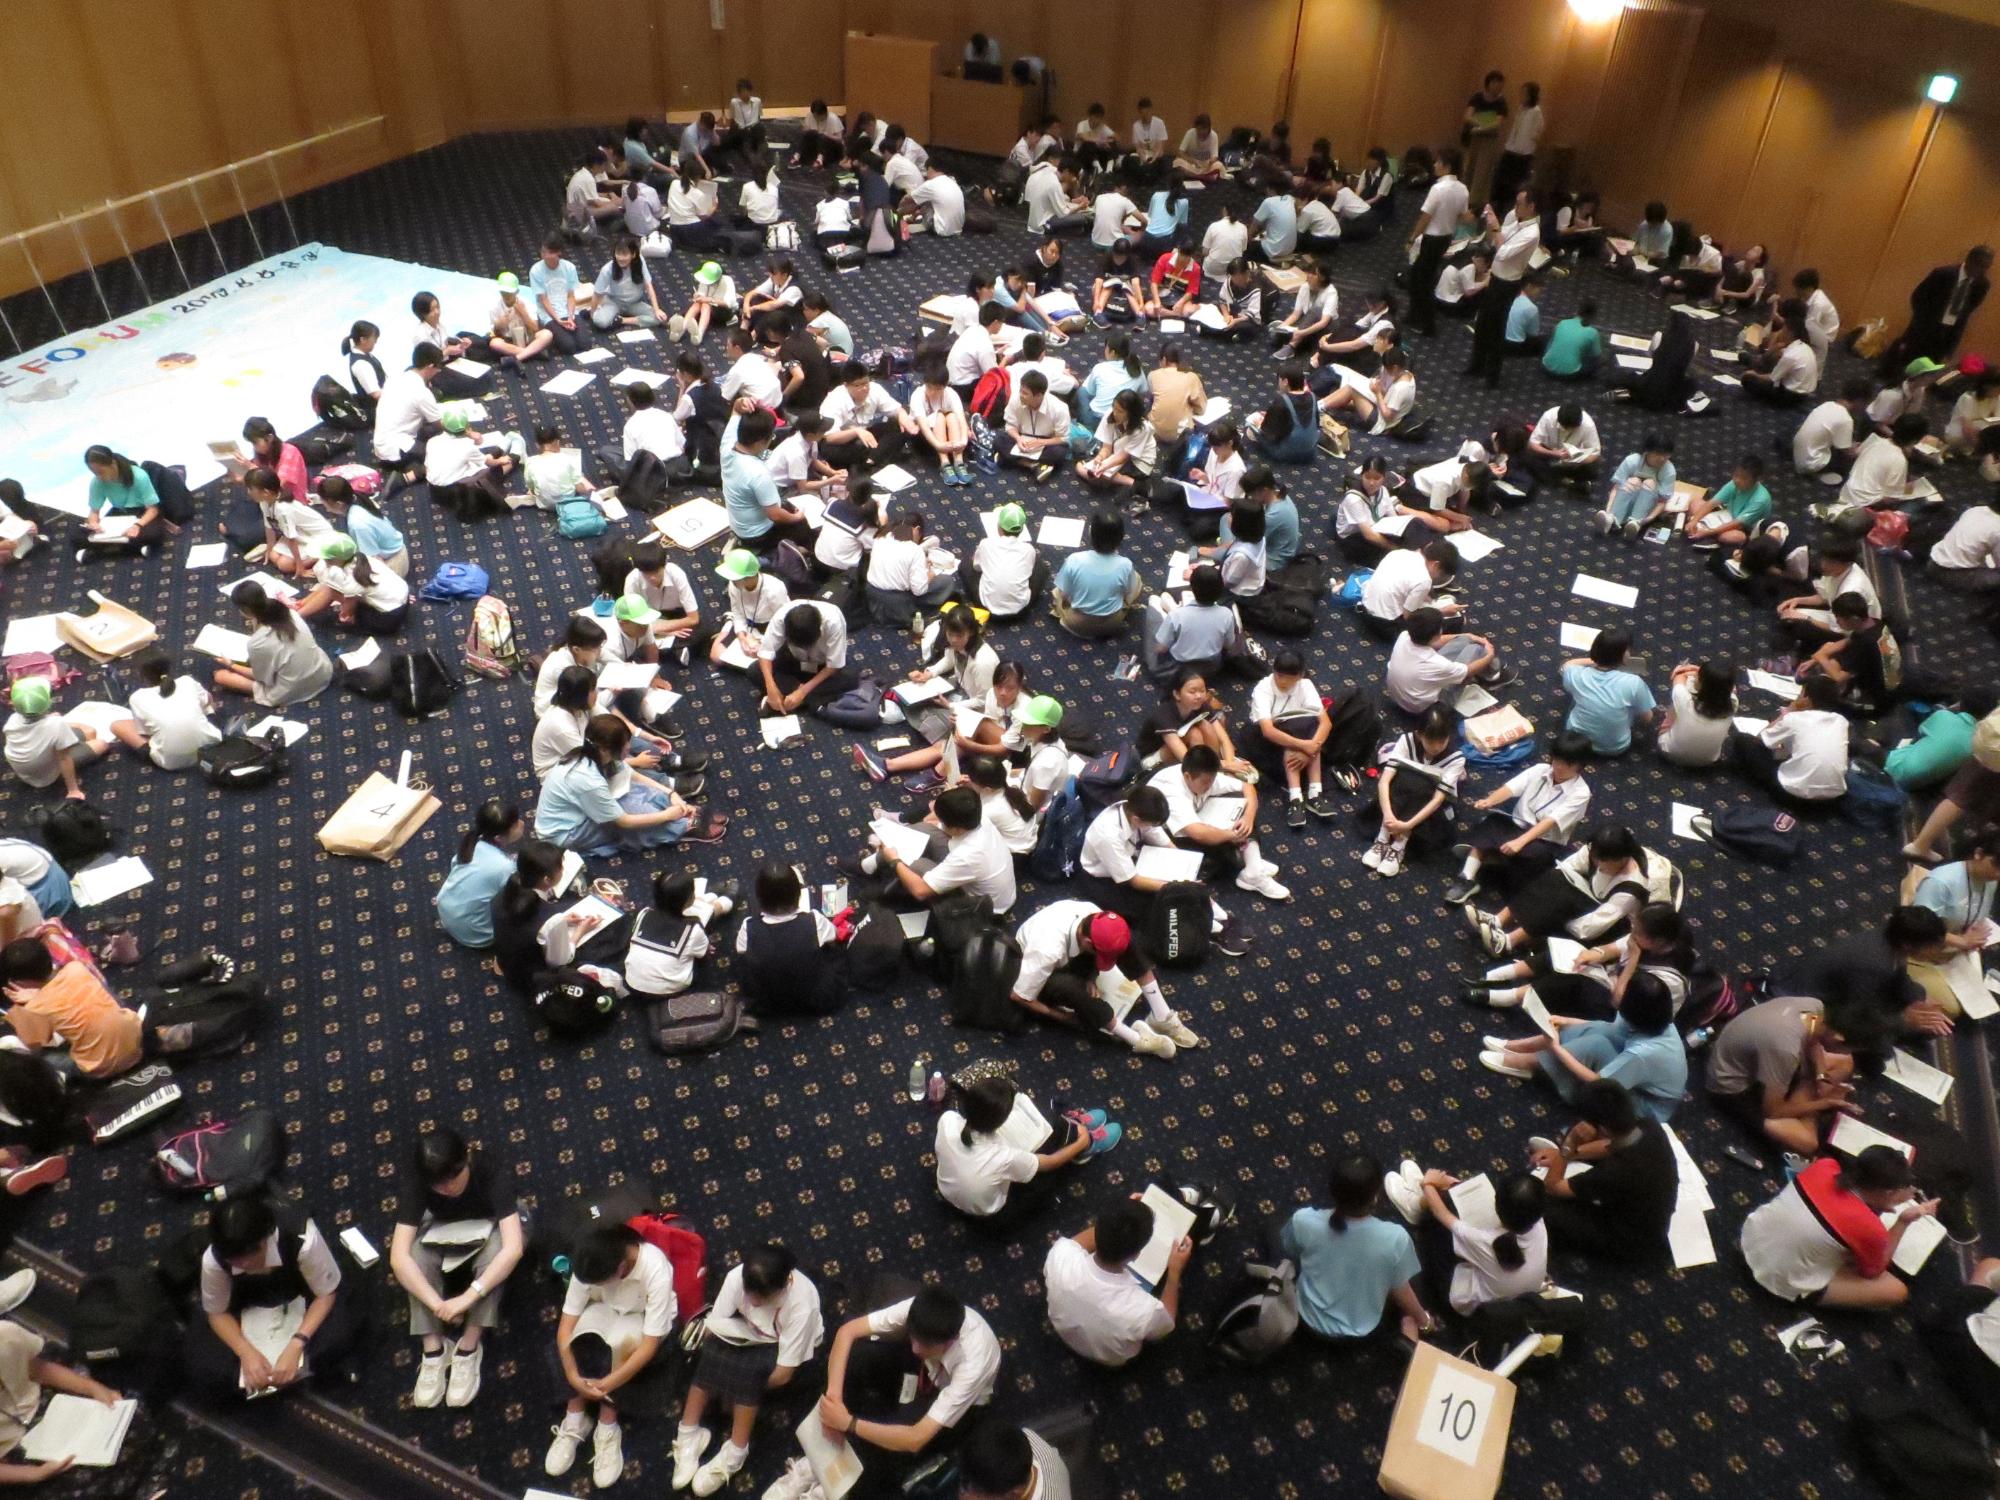 床の上に沢山の生徒たちが座って意見交換をしている様子を上から写している写真